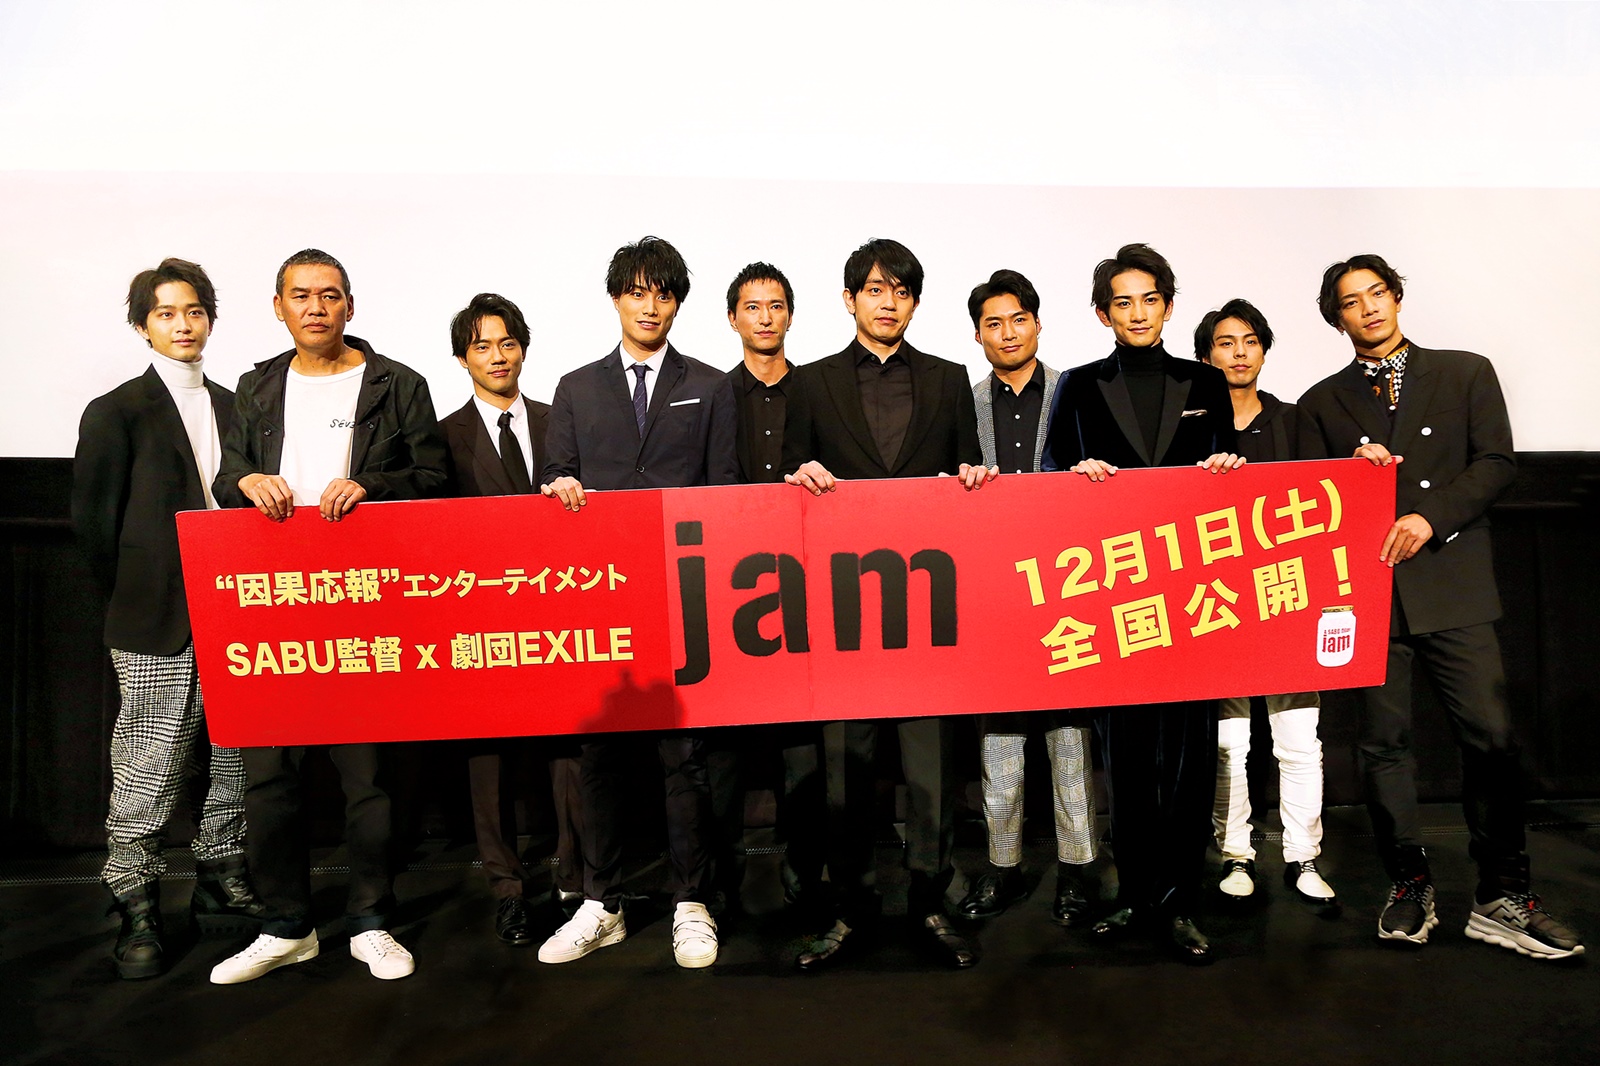 映画『jam』公開初日舞台挨拶レポート | 青柳翔、町田啓太、鈴木